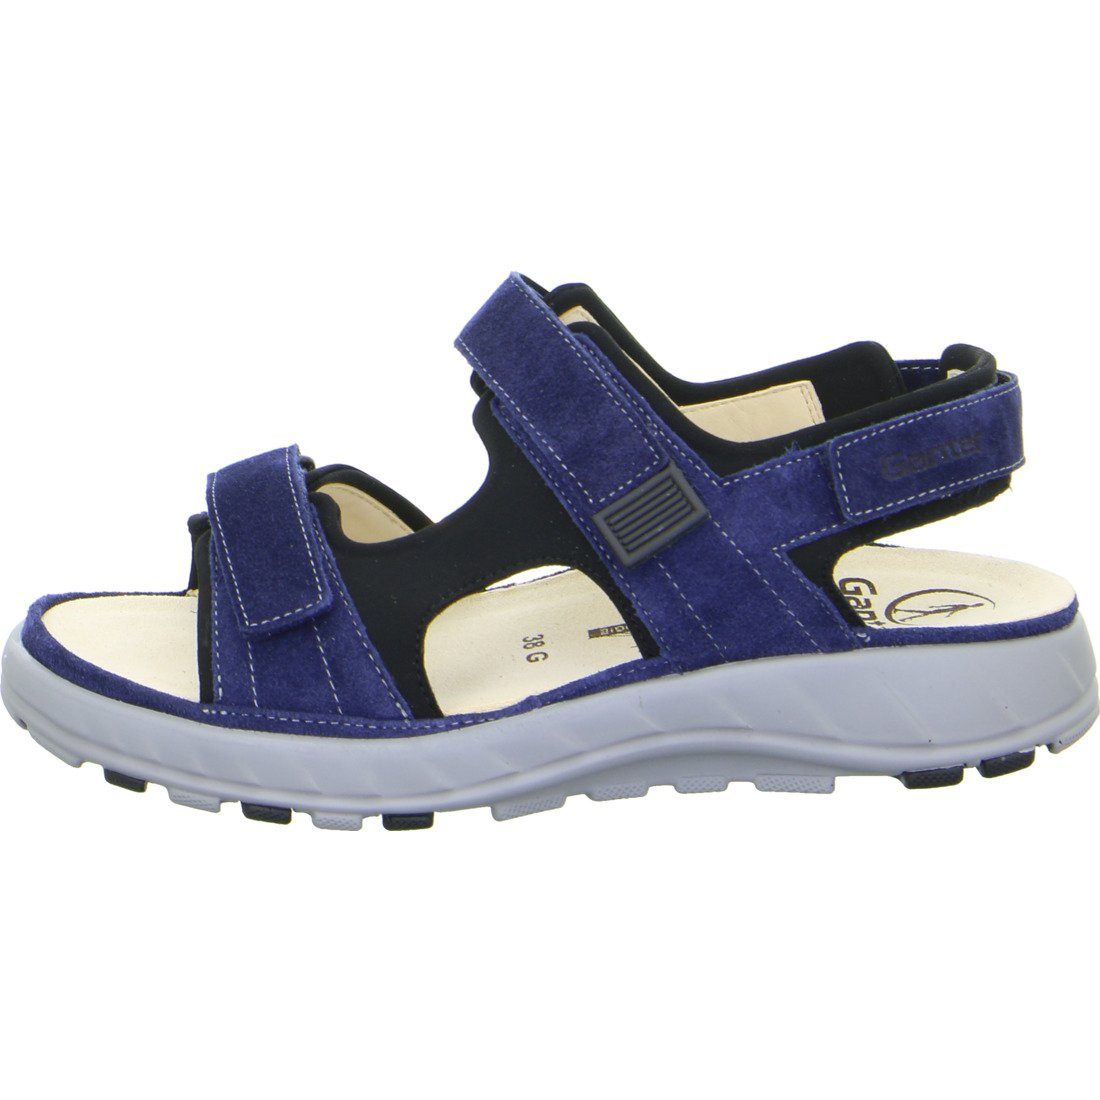 Ganter Ganter blau Schuhe, Sandalette Velours Geva Damen Sandalette 048814 